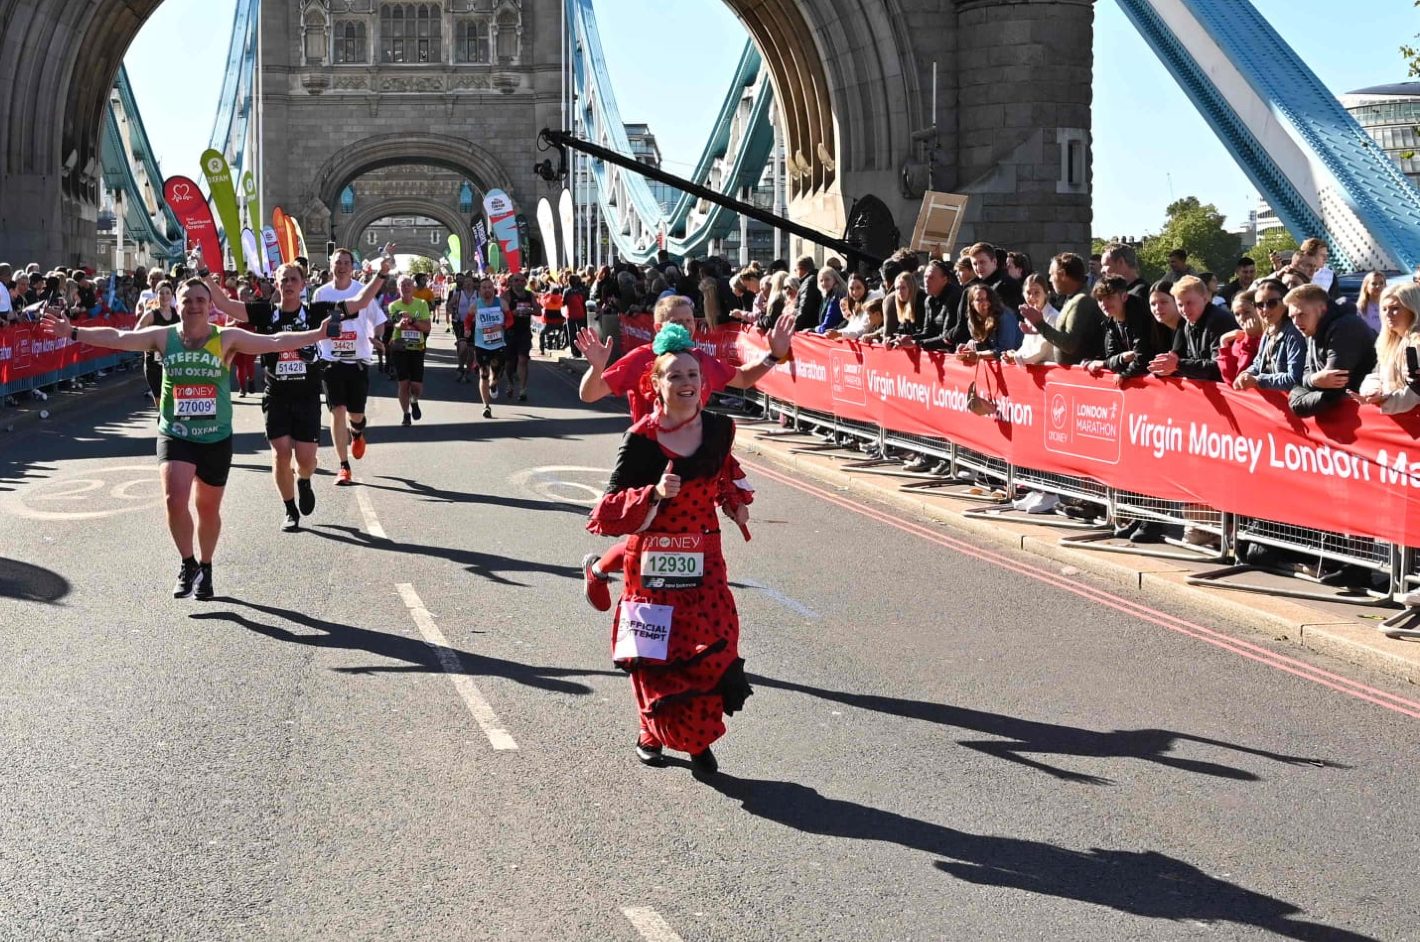 Charlotte Sullivan: “El maratón de Londres es una de esas cosas que quería hacer alguna vez en la vida”